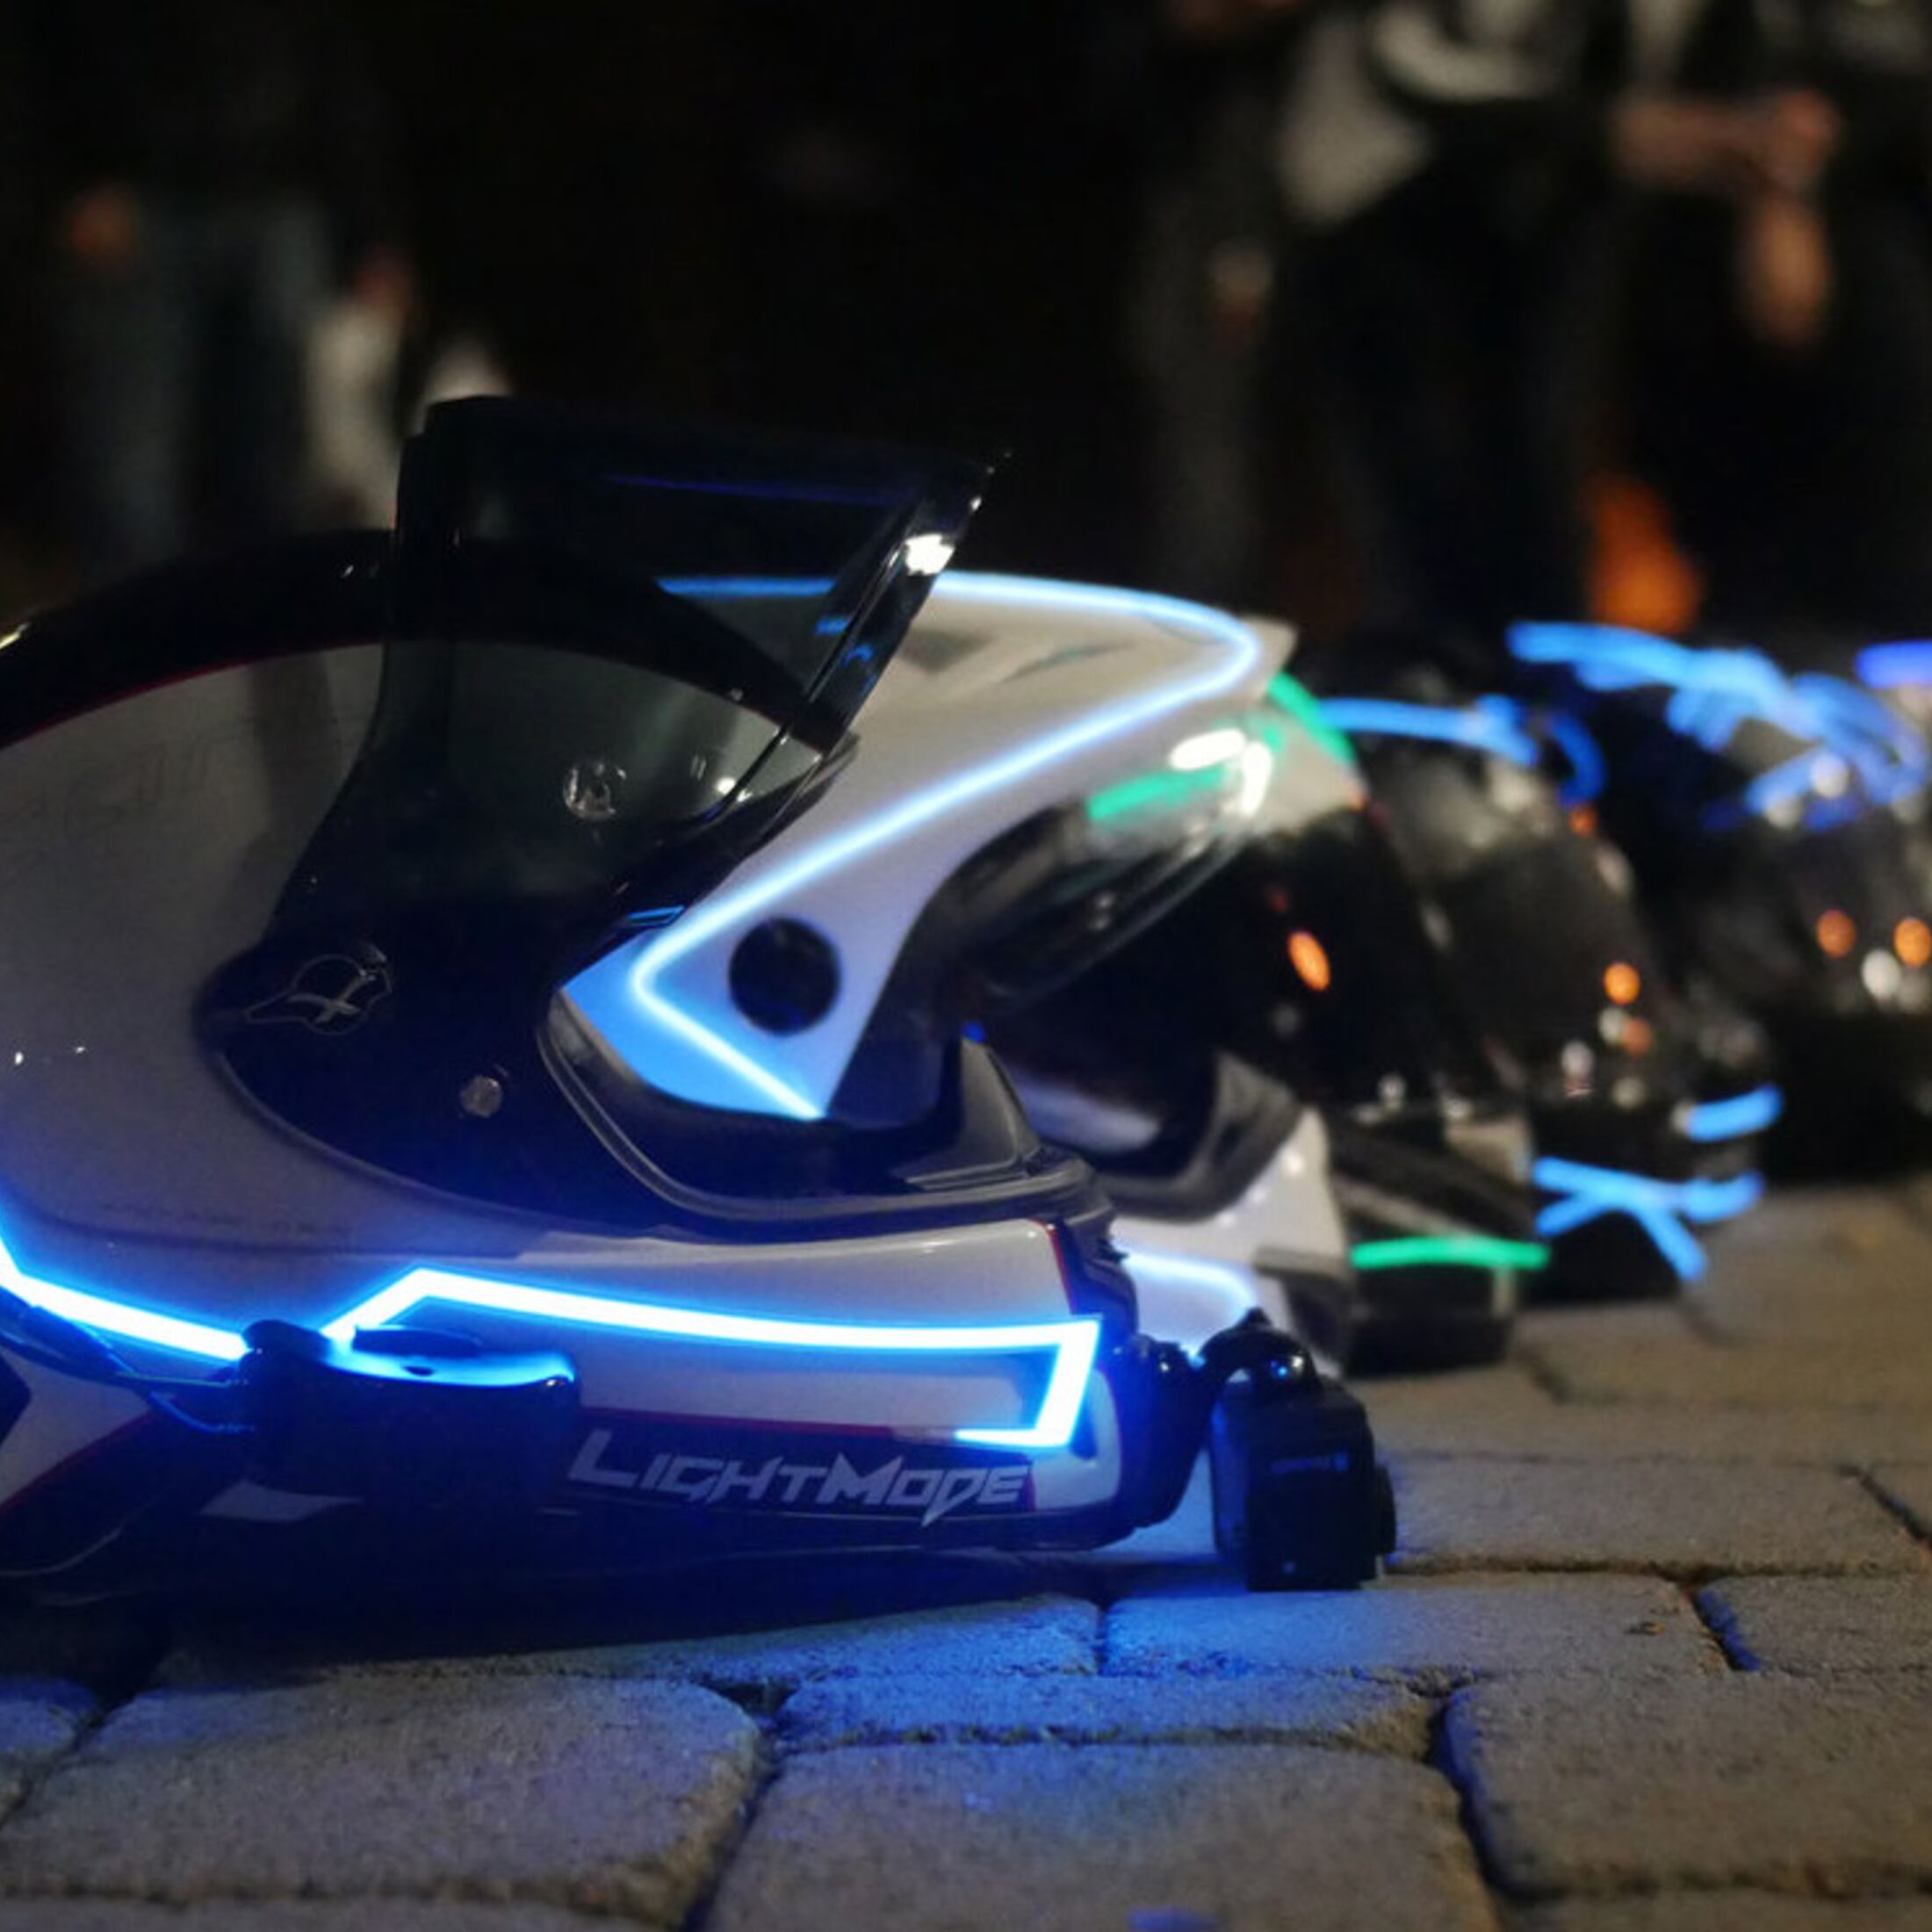 LightMode - leuchtende Nachrüstkits für Motorradhelme